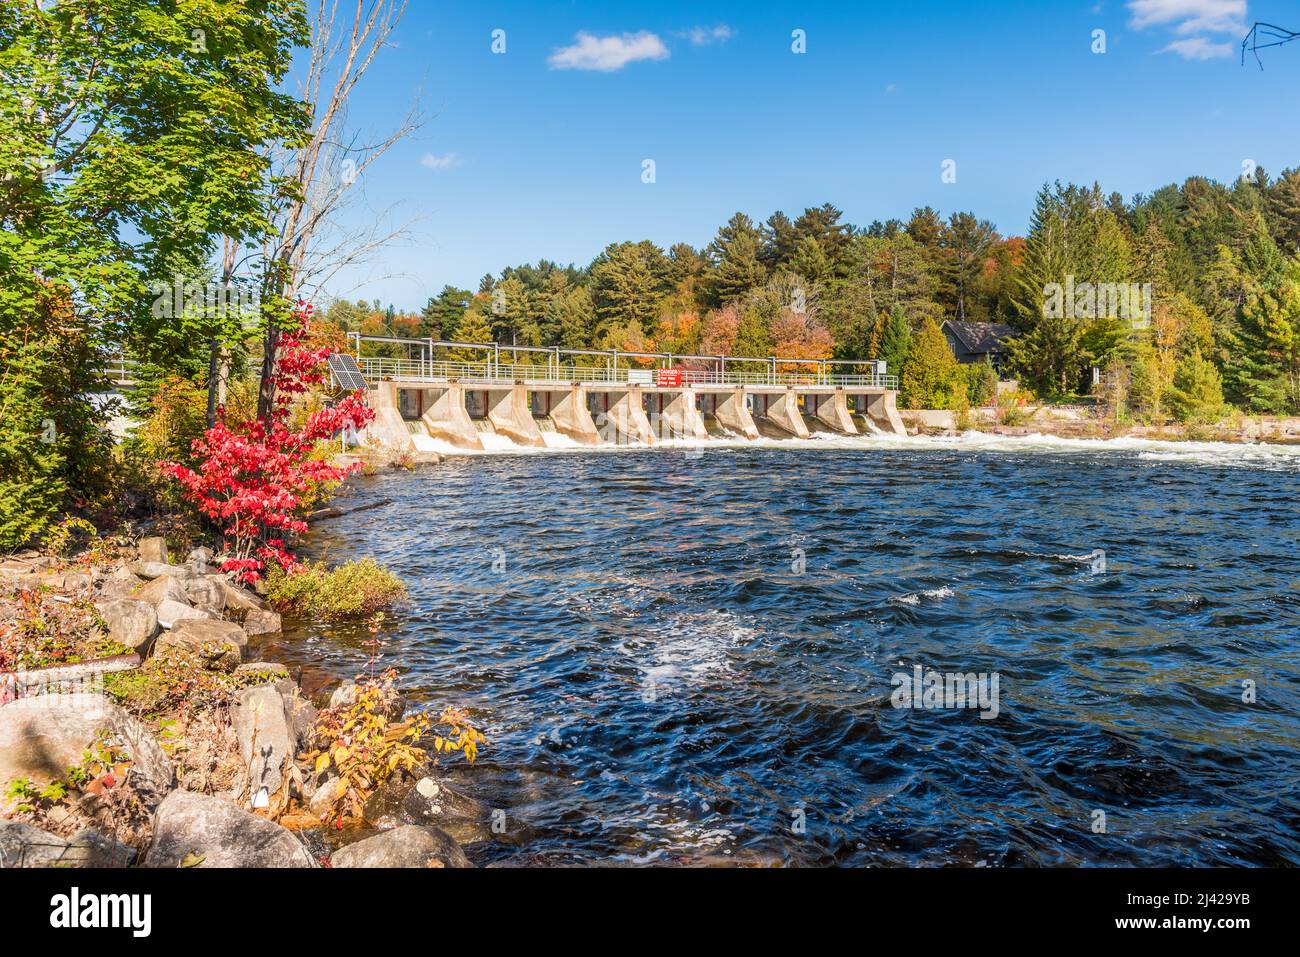 Vue sur un petit barrage sur une rivière avec des berges boisées par un beau jour d'automne Banque D'Images